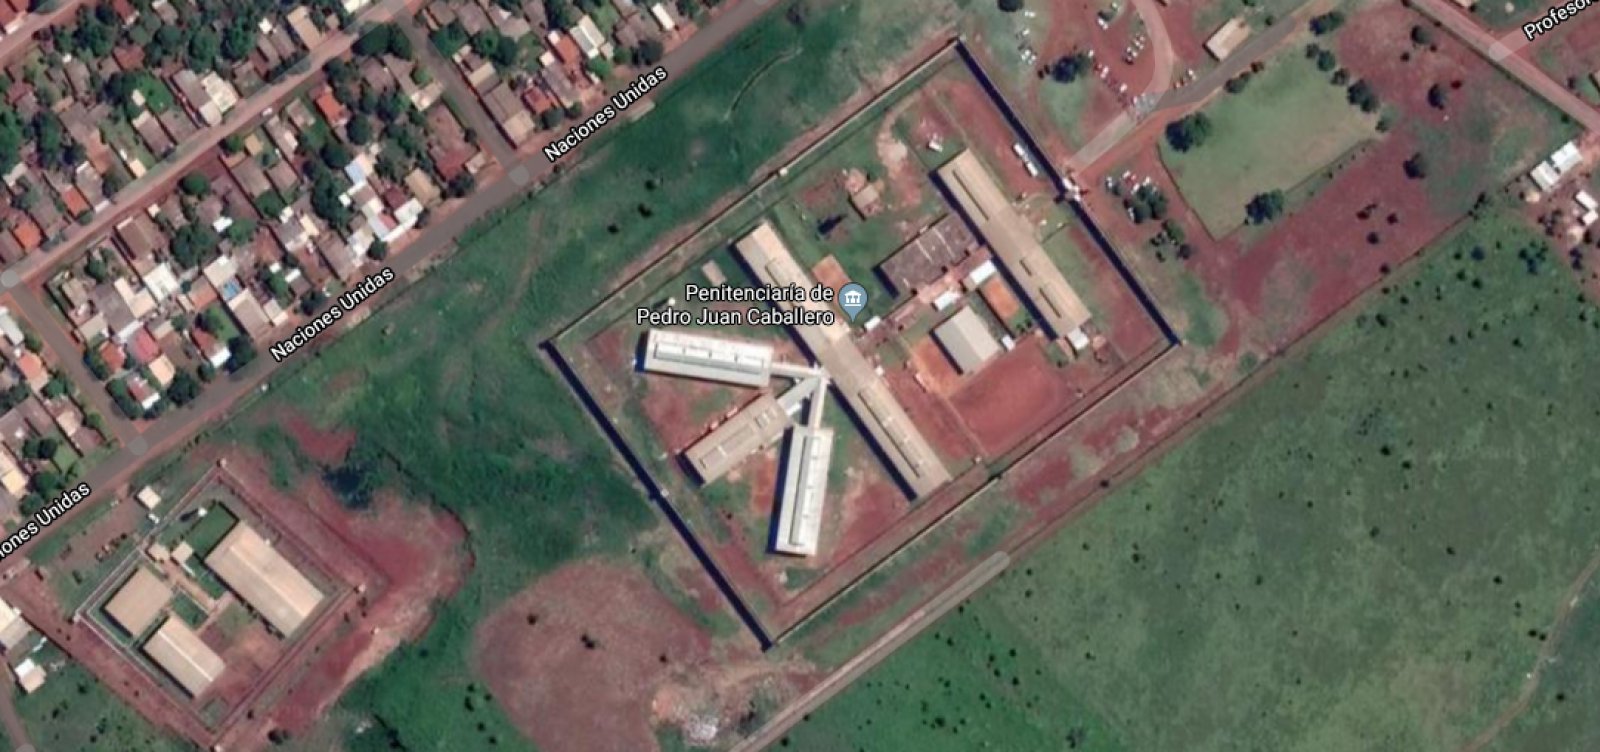 Após fuga de 76 presos, Brasil bloqueia fronteira do Paraguai com Mato Grosso do Sul